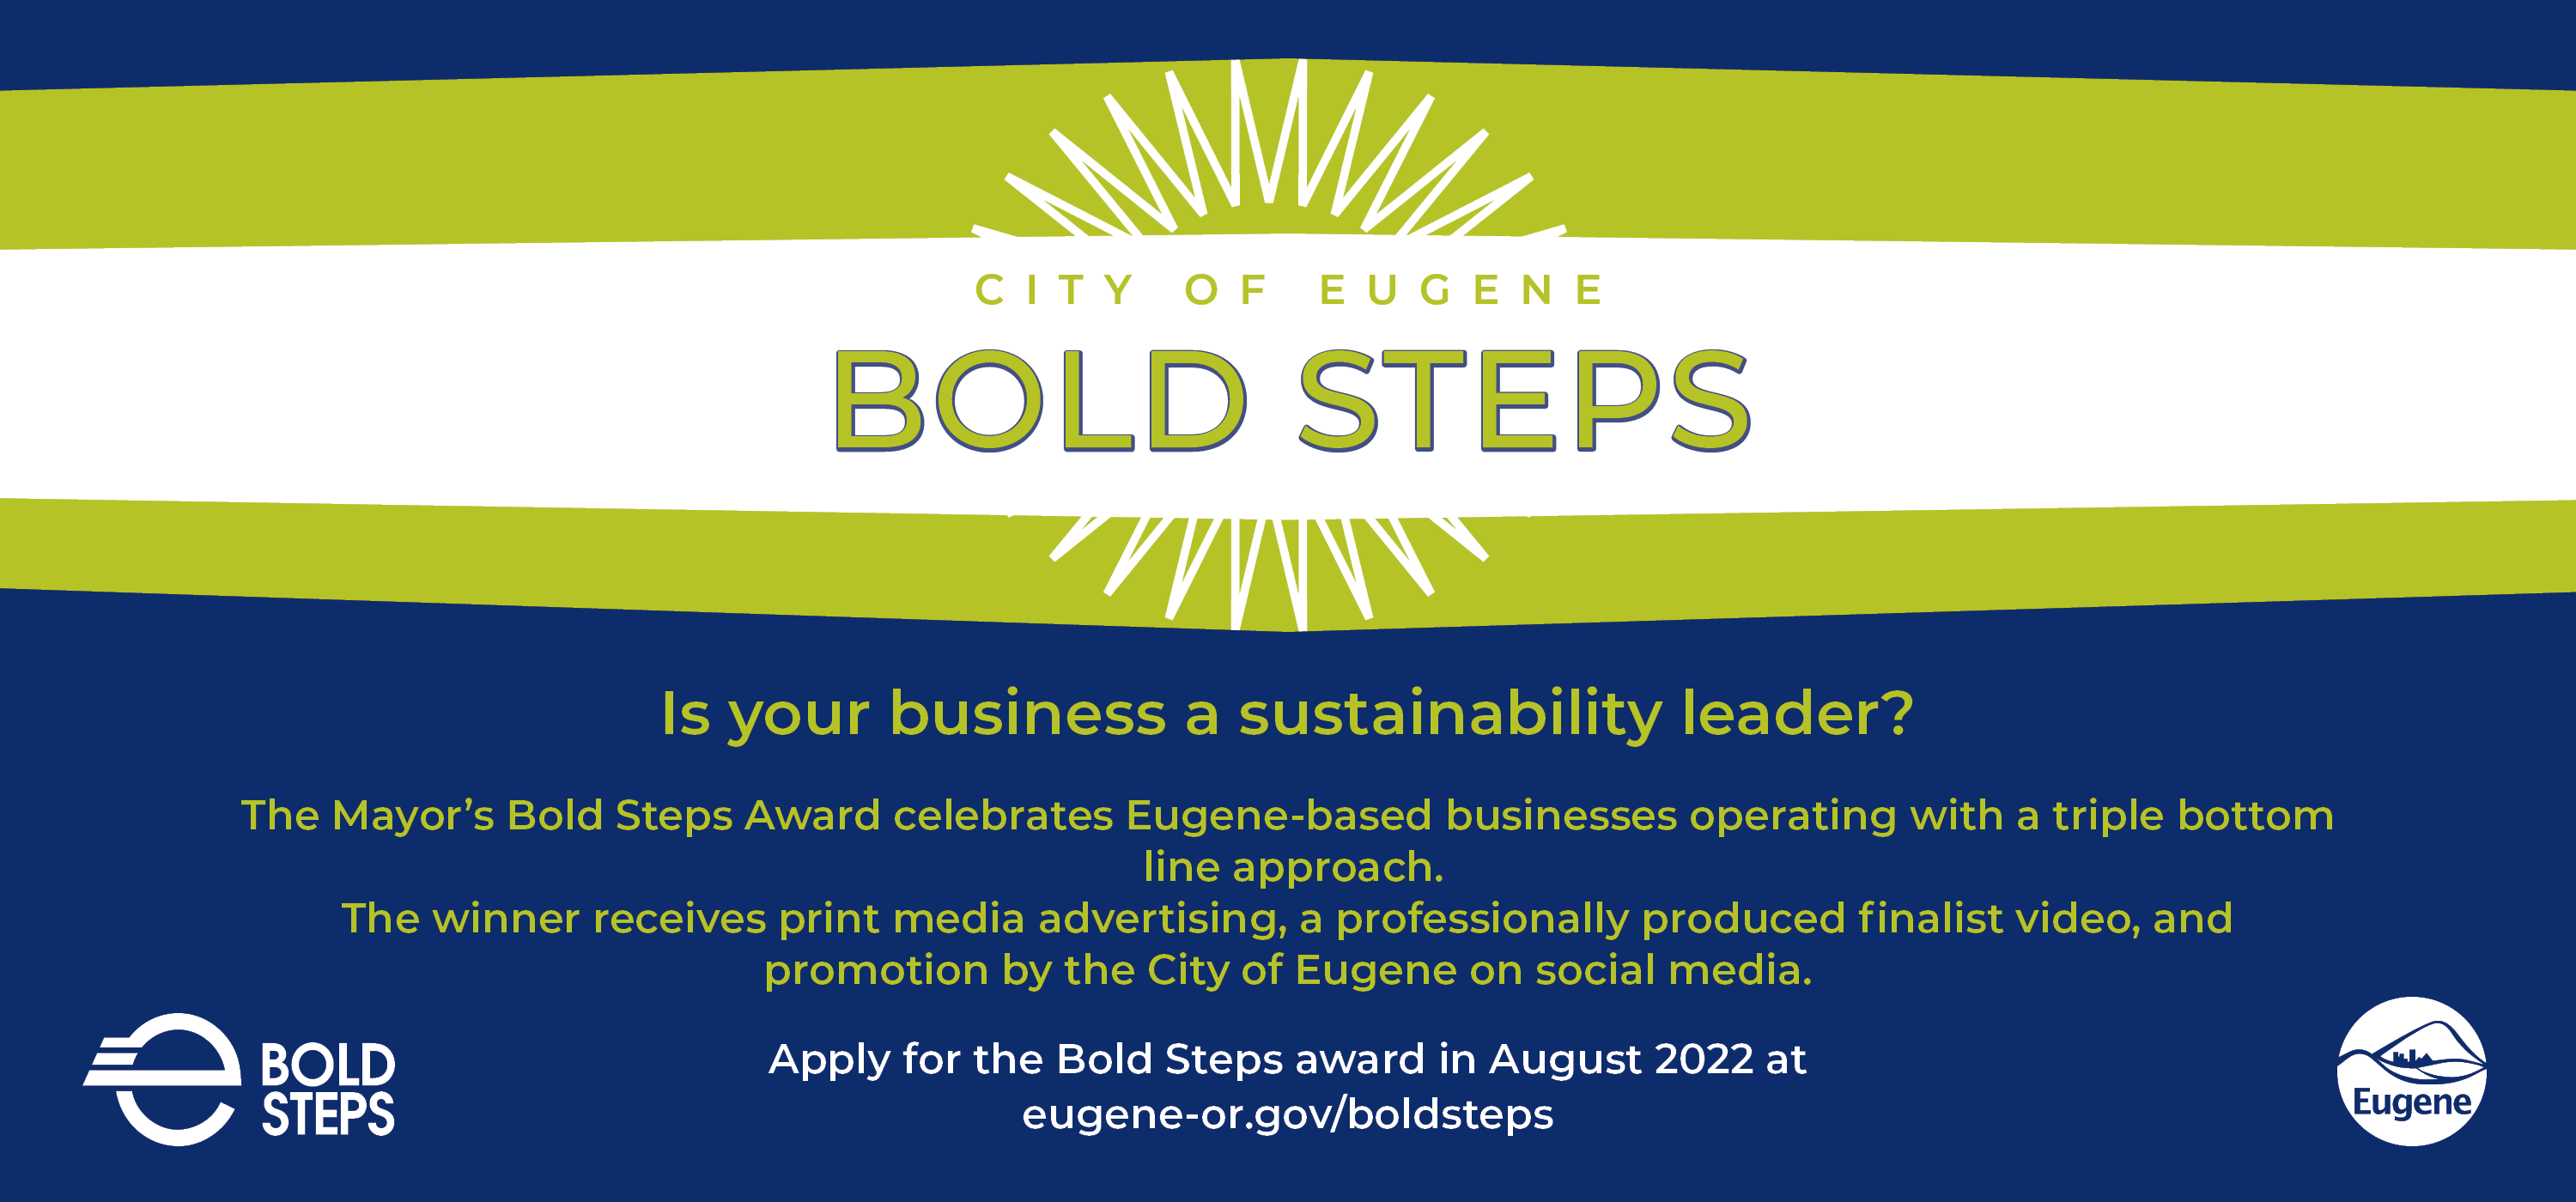 City of Eugene Bold Steps Award